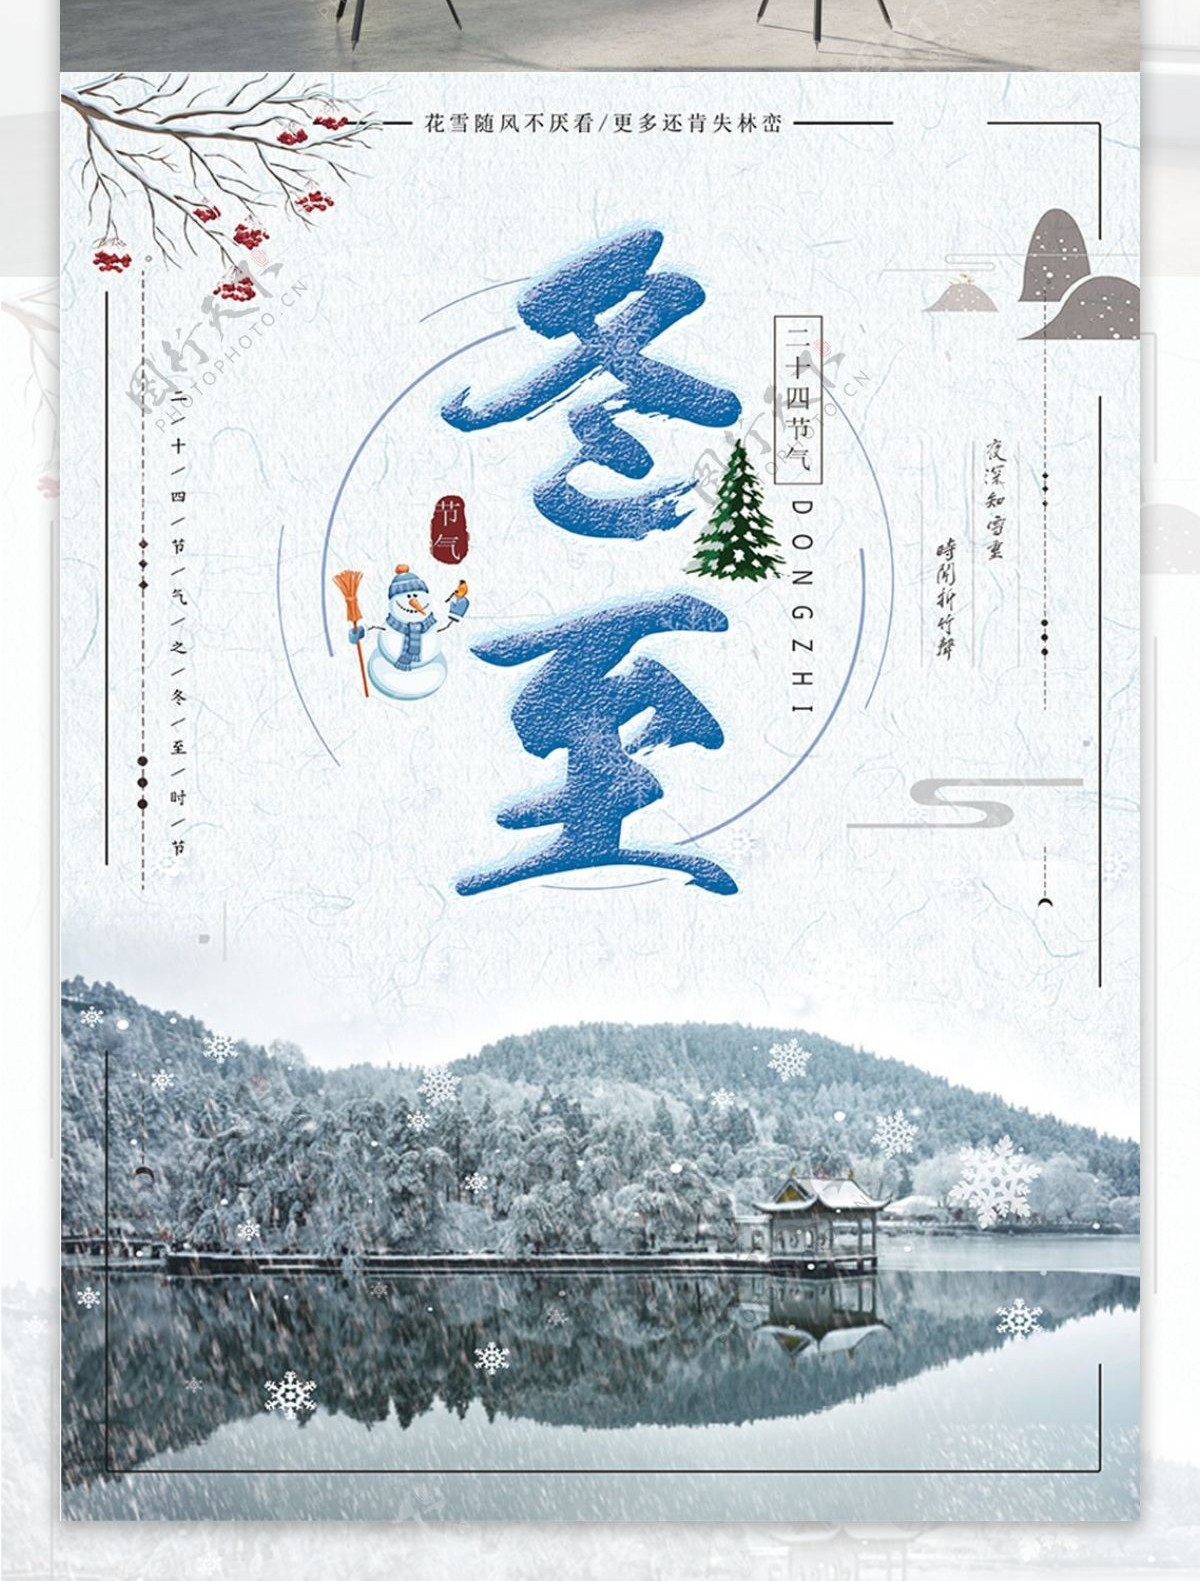 冬至中国传统二十四节气之一宣传海报